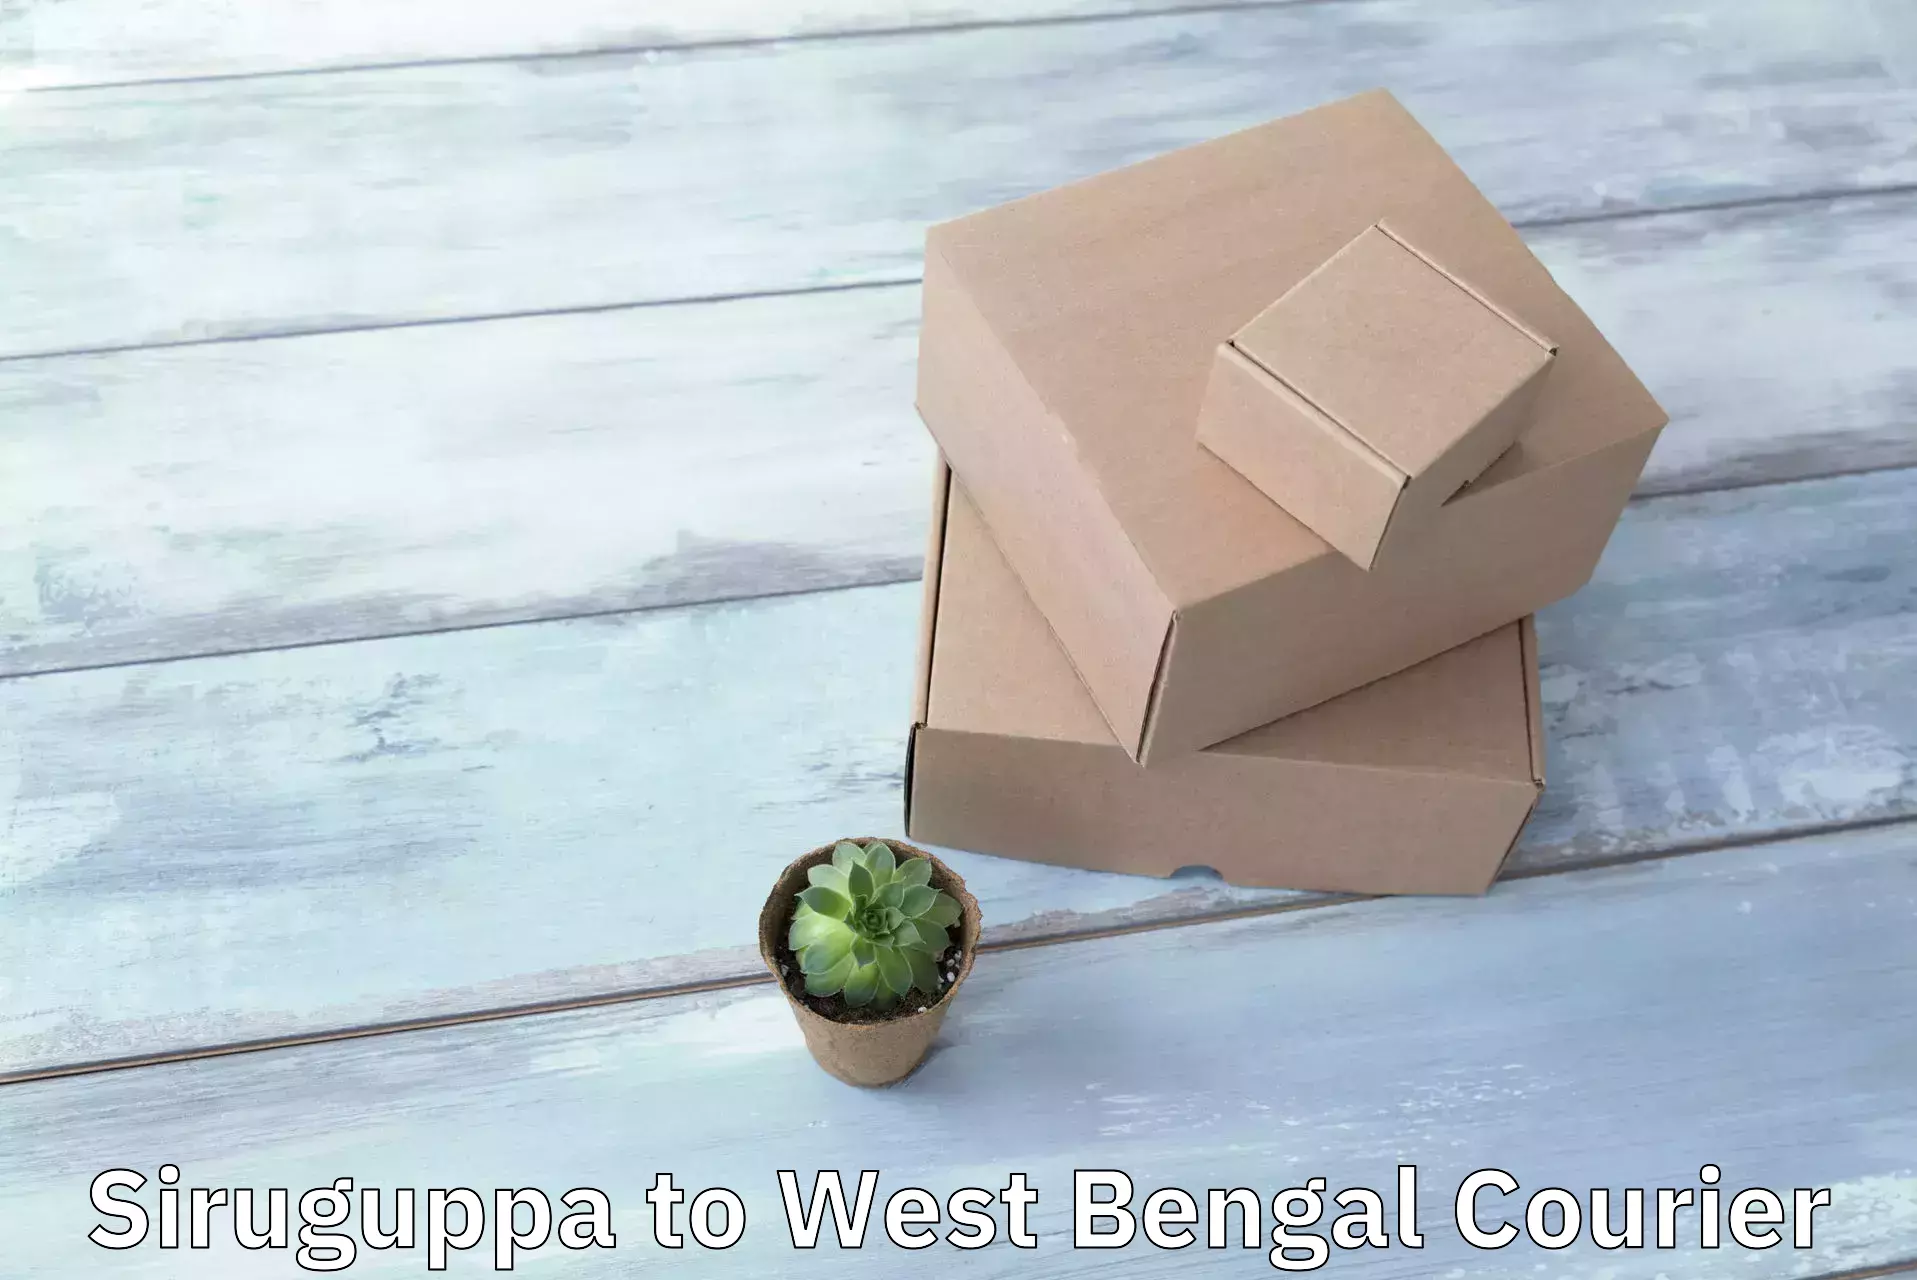 Courier service comparison Siruguppa to Bankura